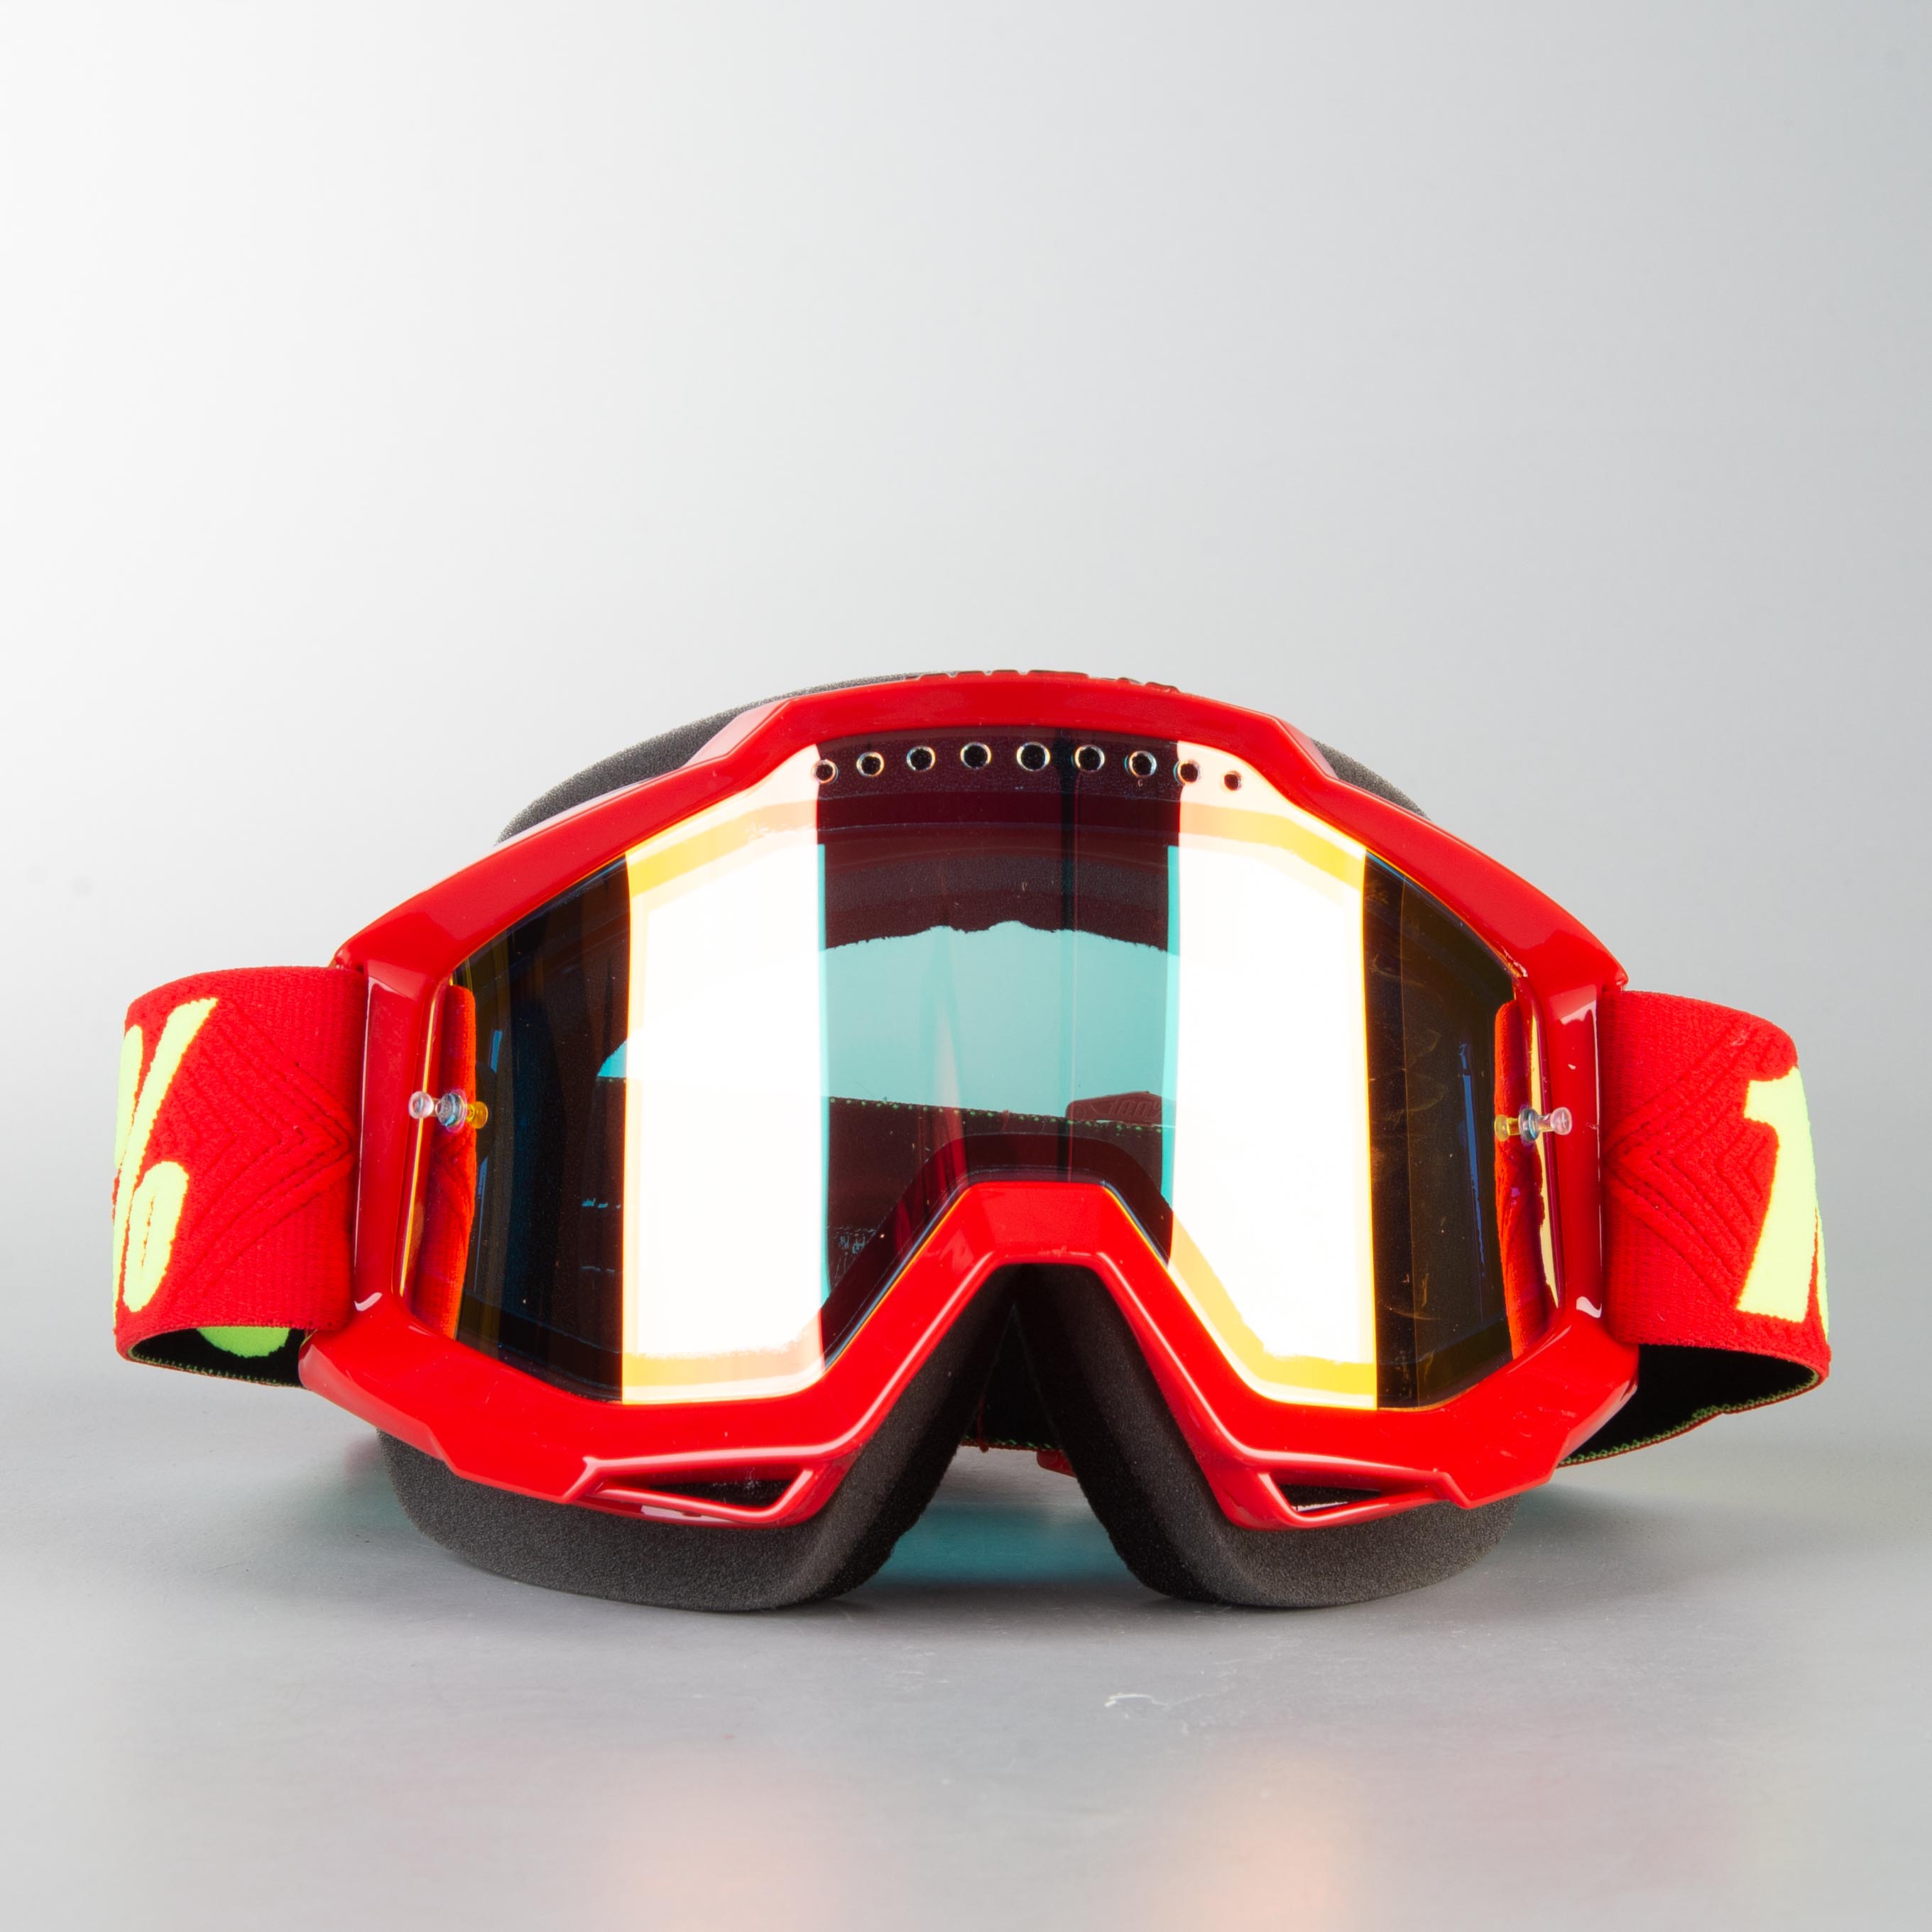 100 goggles snowmobile